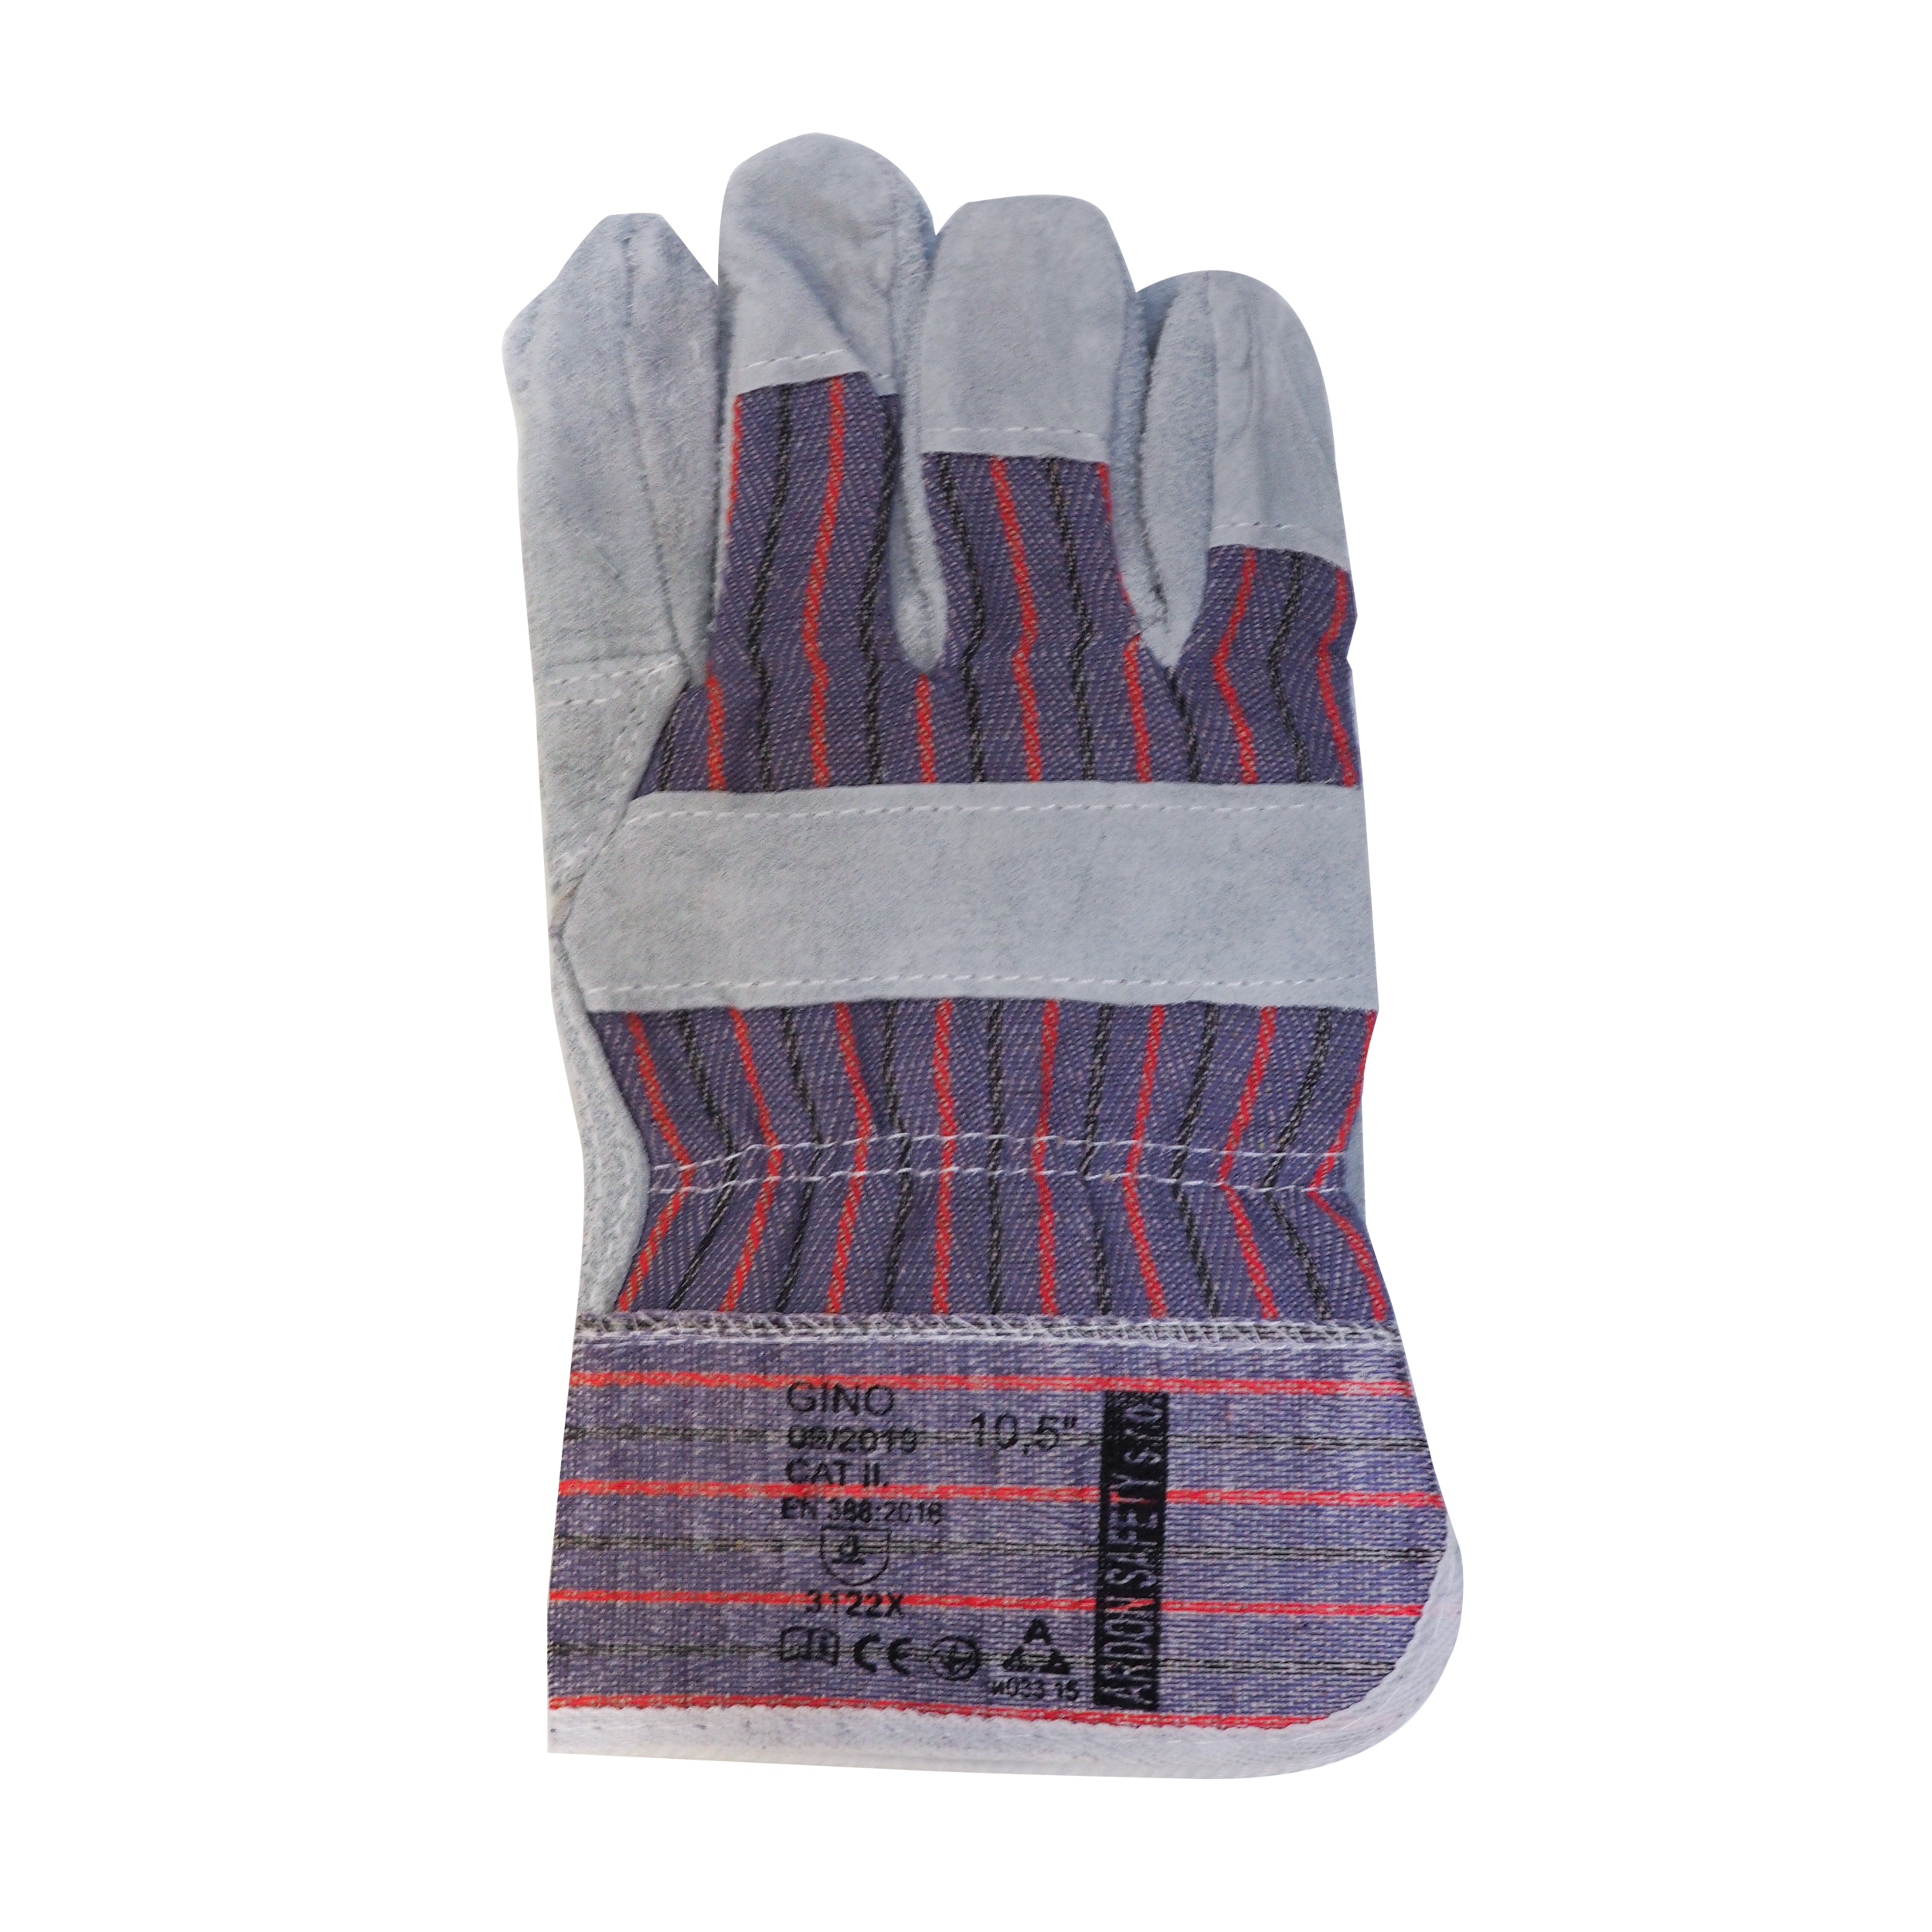 rukavice GINO, kožené, standard, velikost 10,5 0.14 Kg TOP Sklad4 600121 69